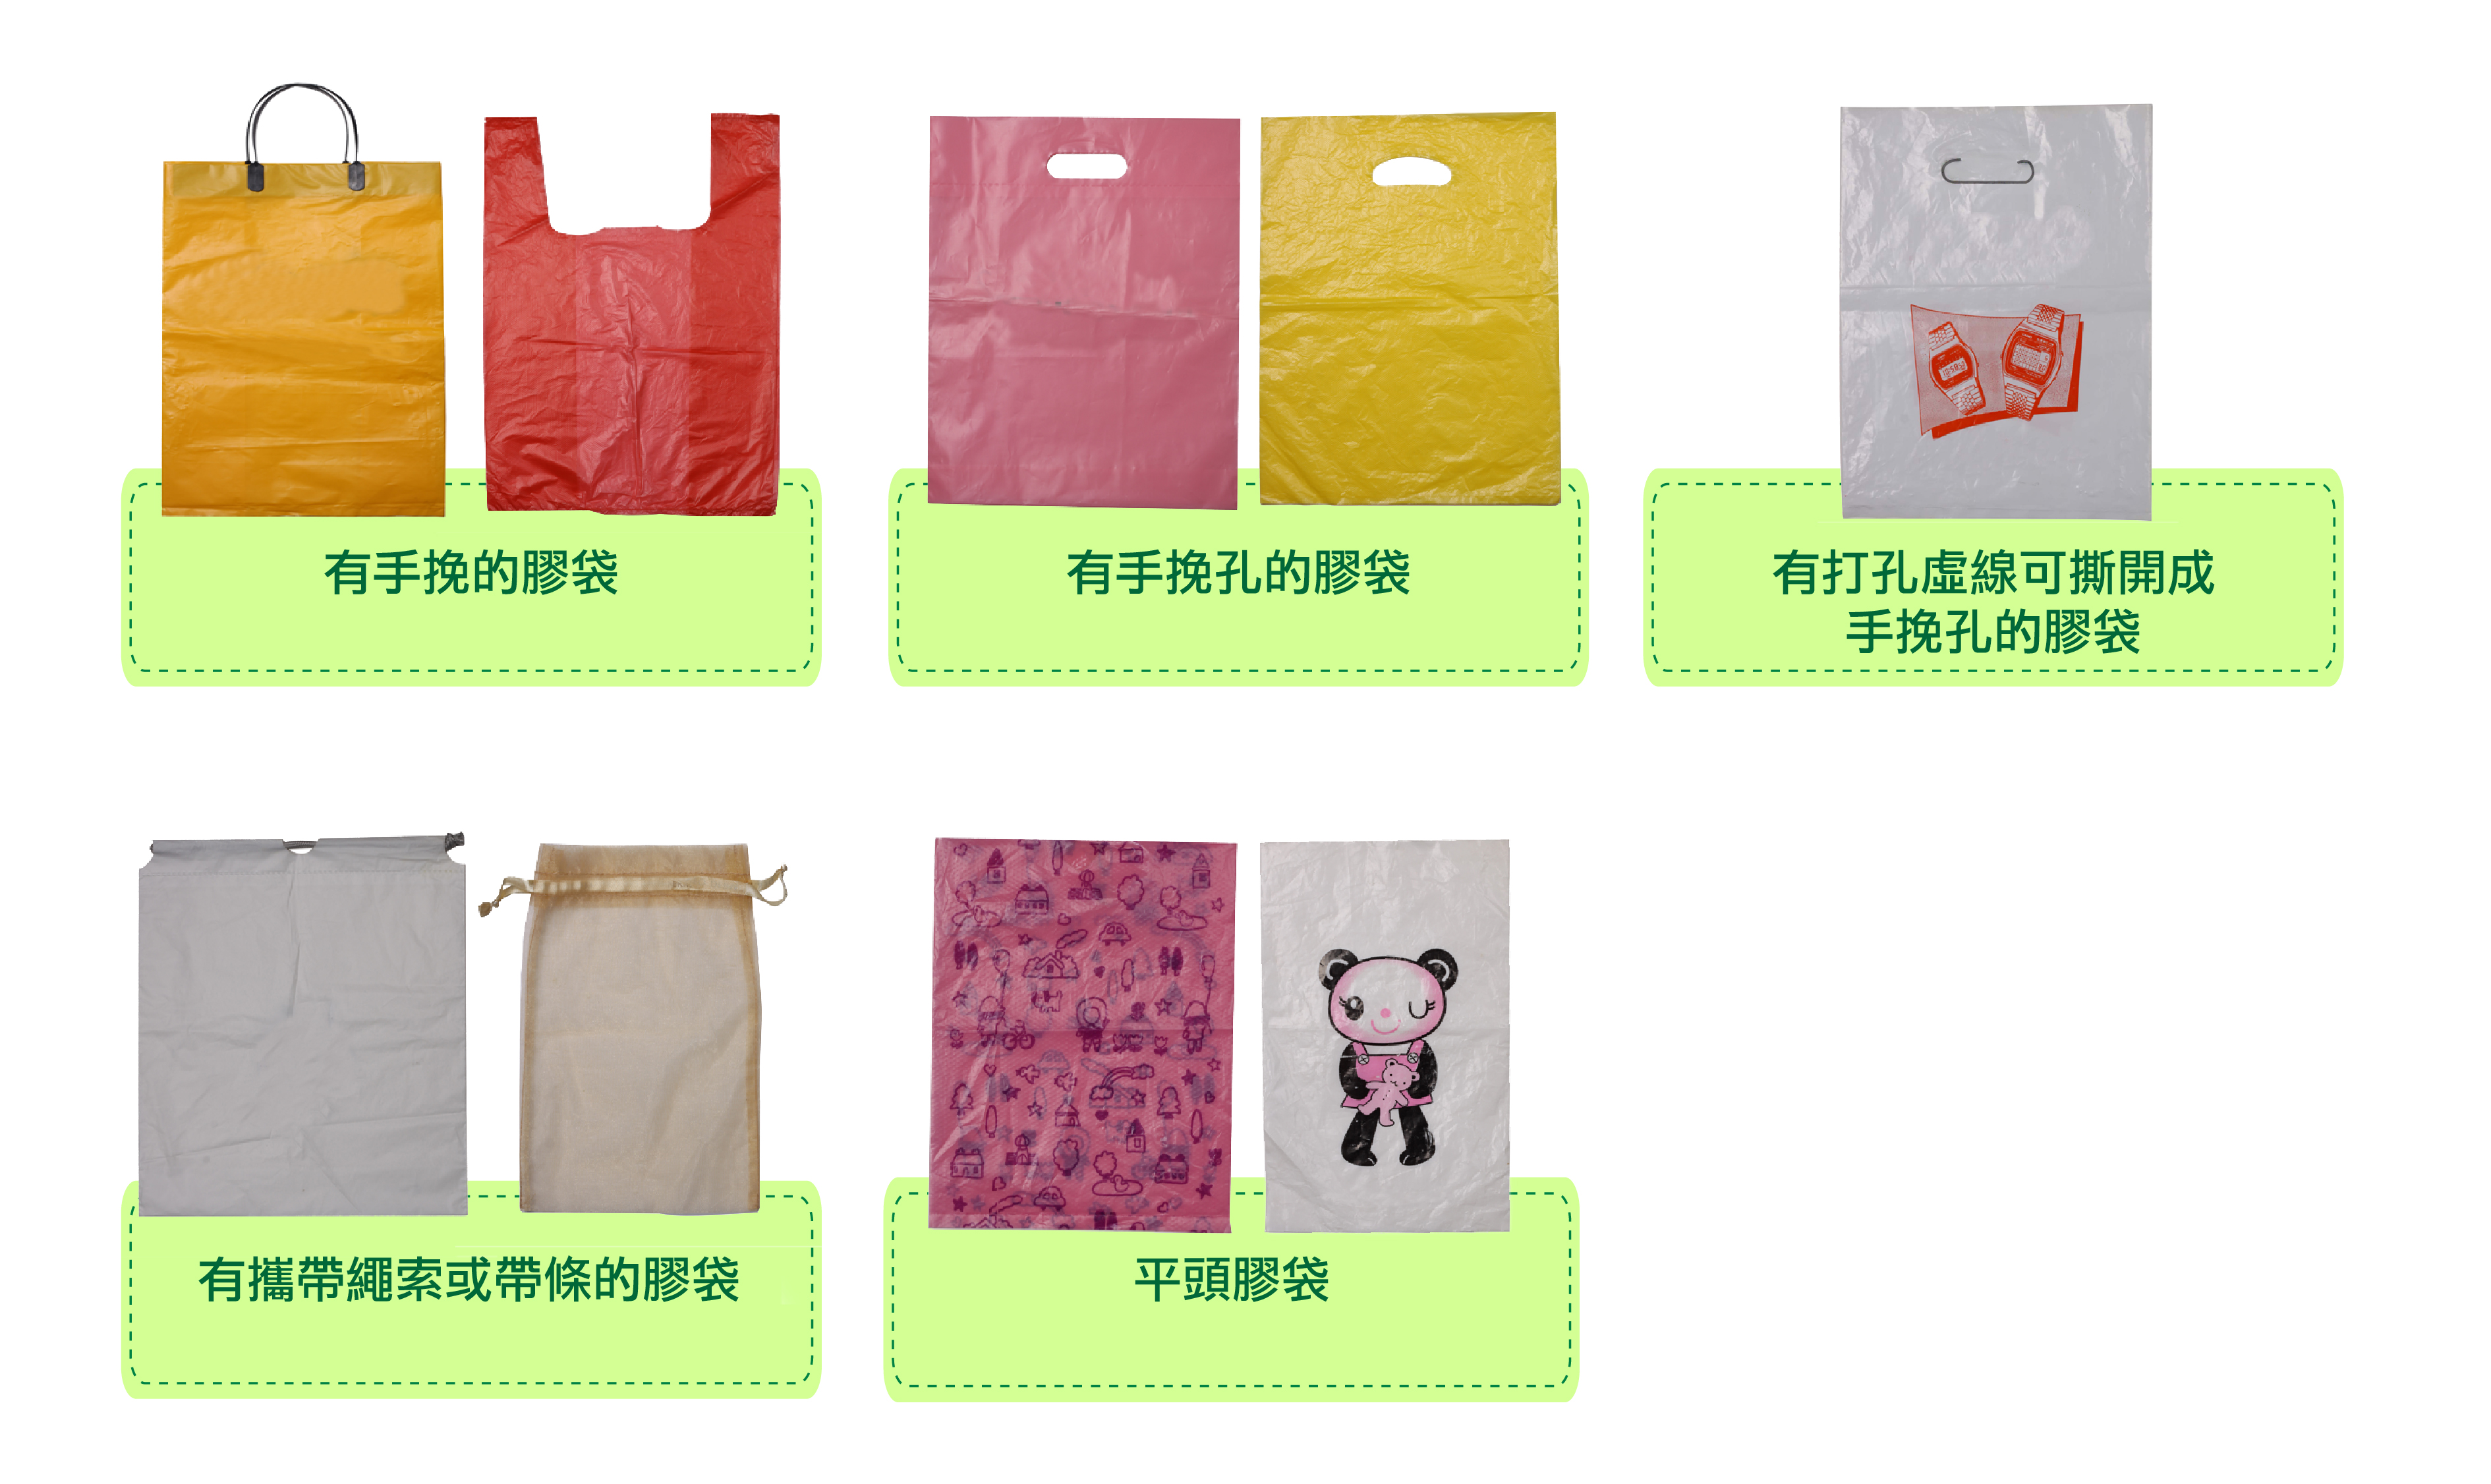 塑膠購物袋輔助說明例子